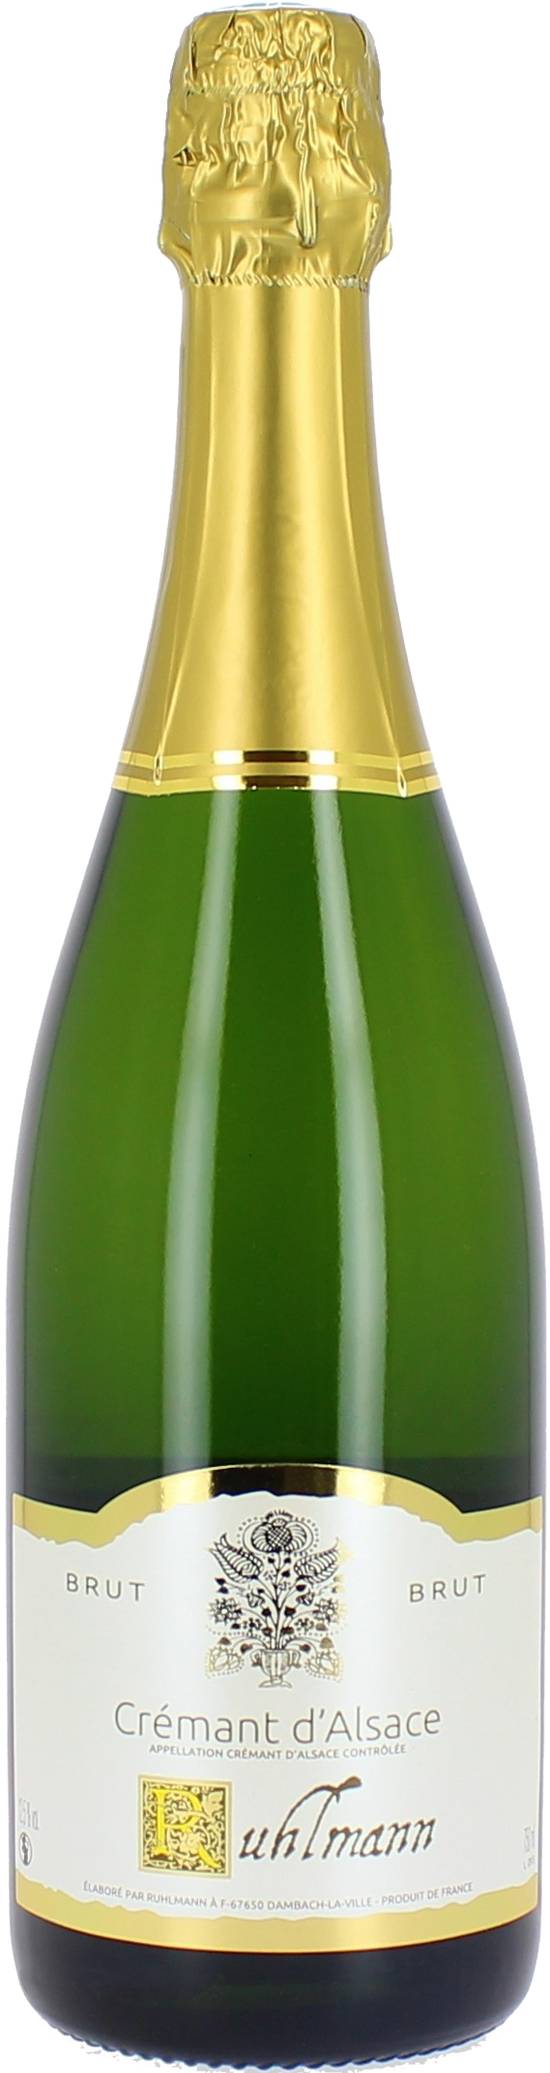 Ruhlmann - Vin crémant d'alsace brut domestique (750 ml)